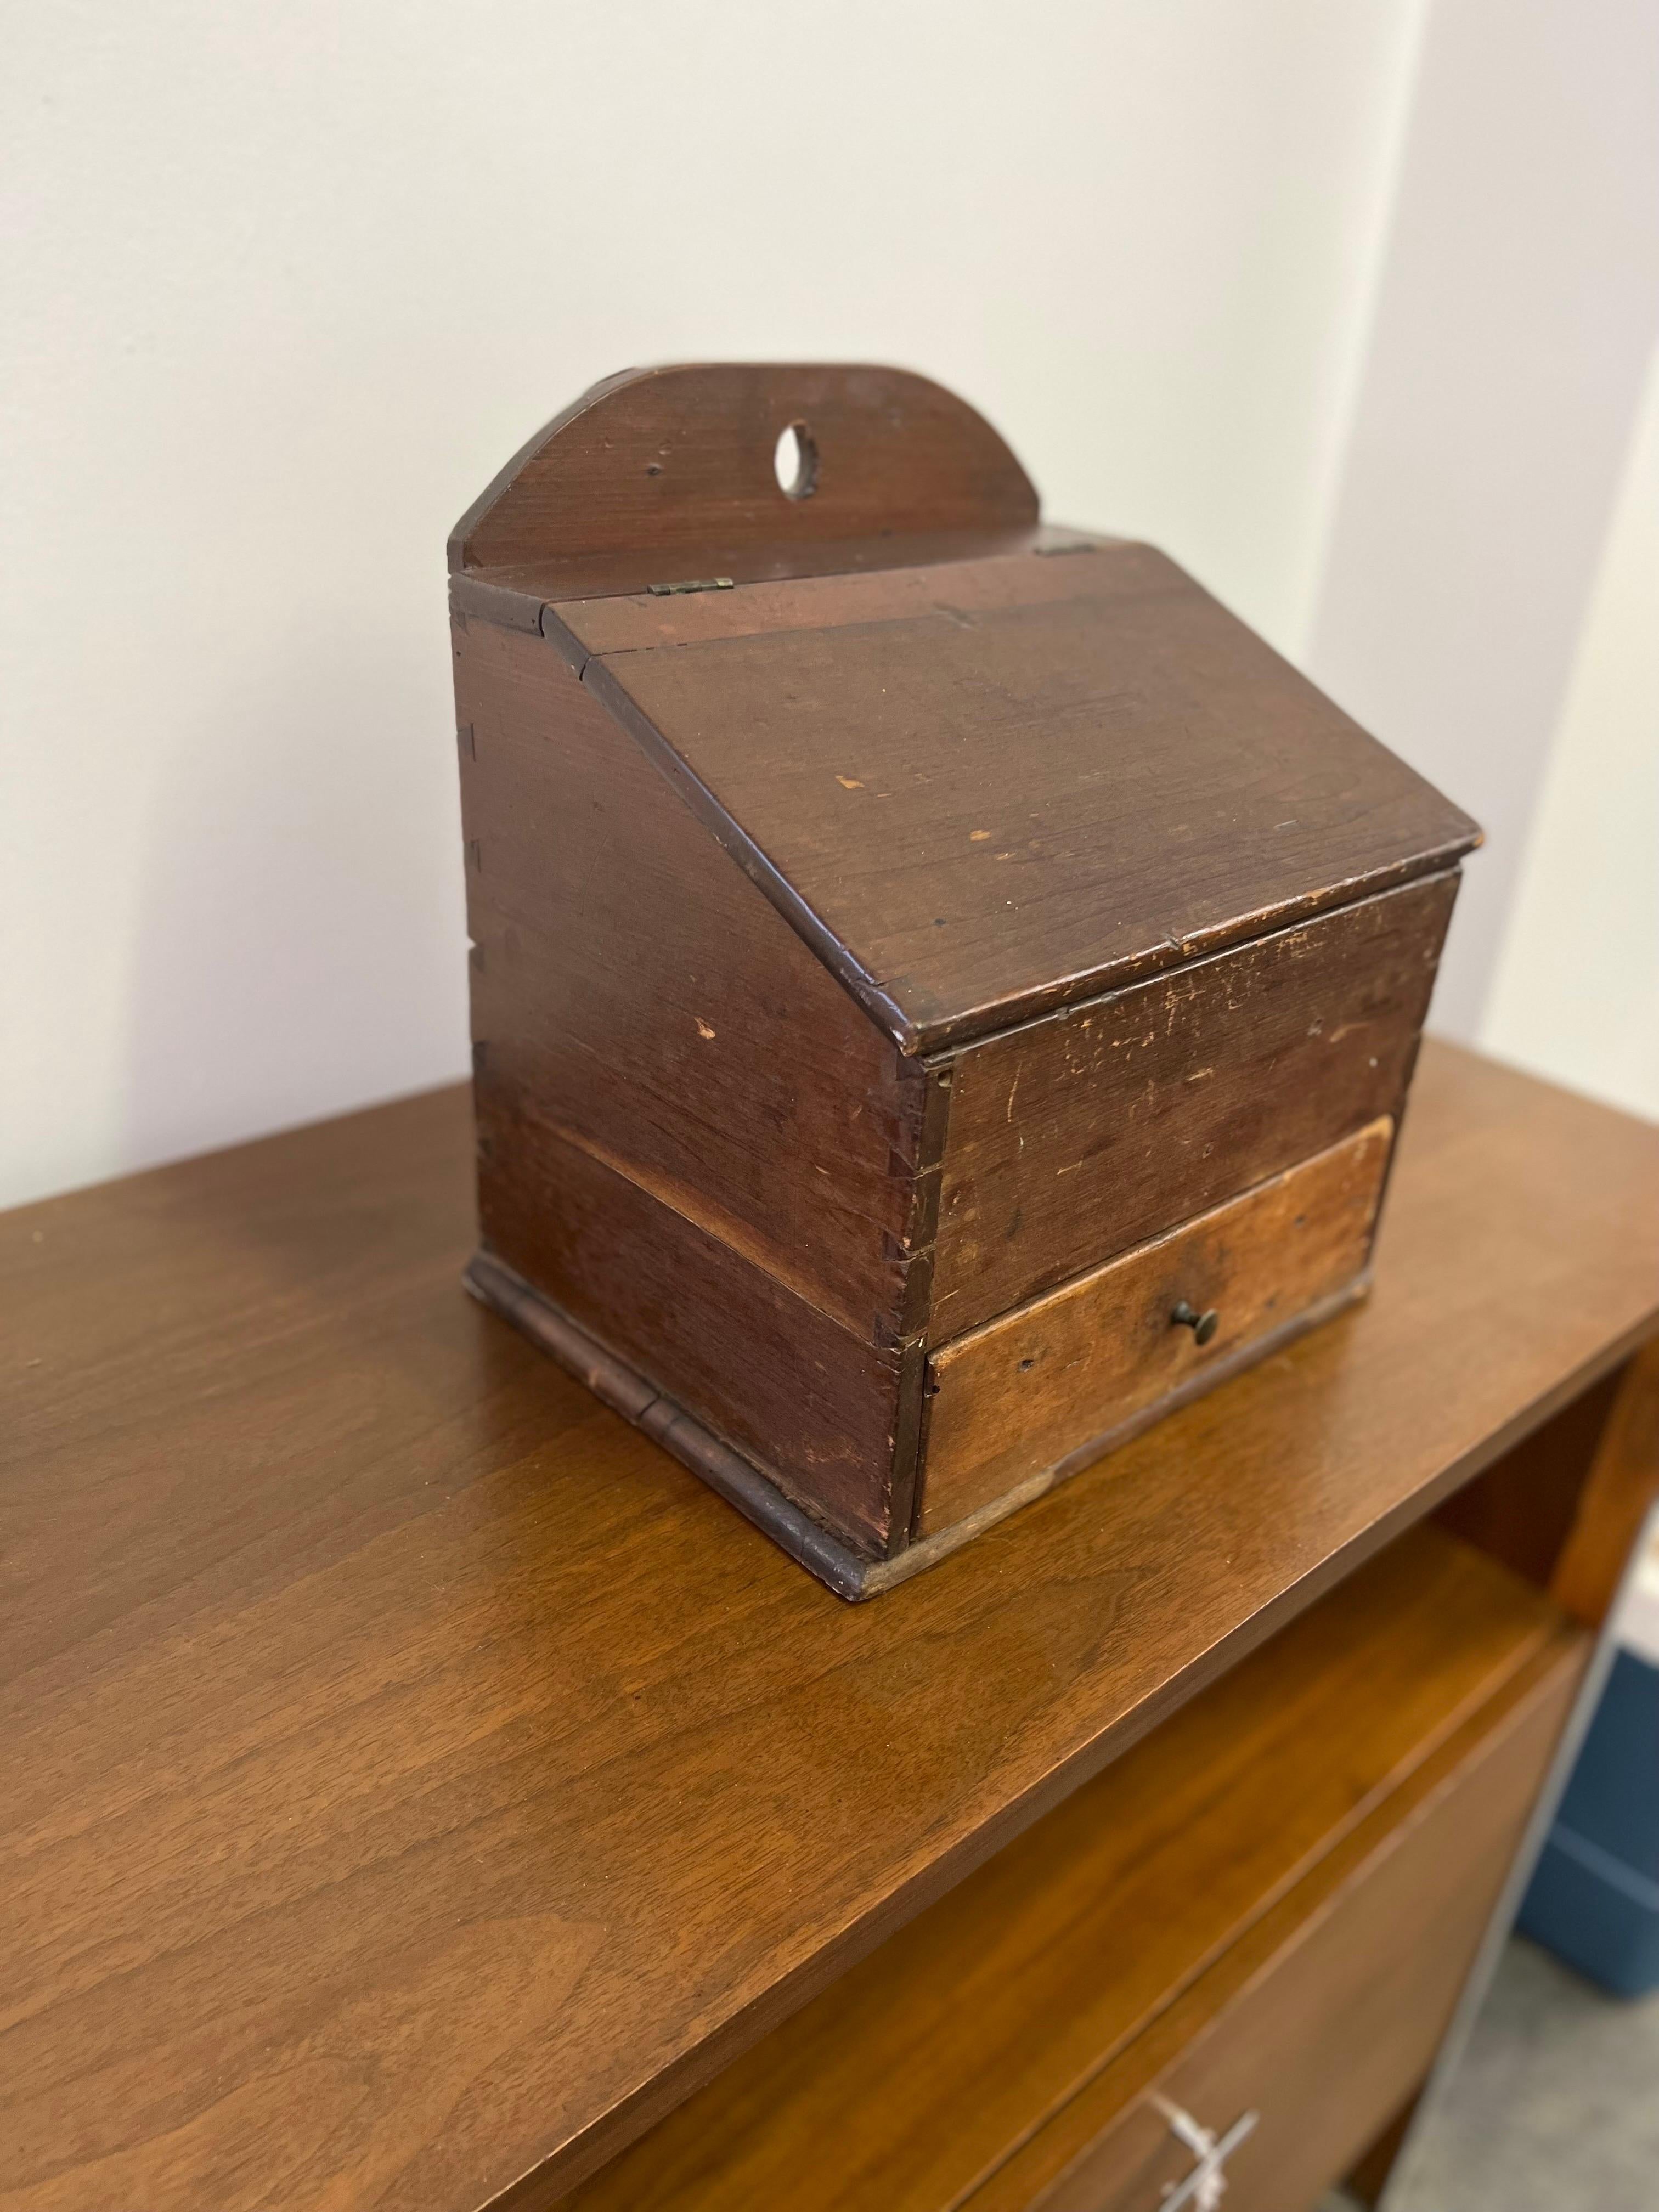 Antike Shaker Gewürzdose

Angeboten wird eine einzigartige antike Shaker-Gewürzdose. Das Stück stammt aus den 1800er Jahren. Das Stück verfügt über einen aufklappbaren Deckel und eine einzelne Schublade. Die Schublade ist unterteilt, um die